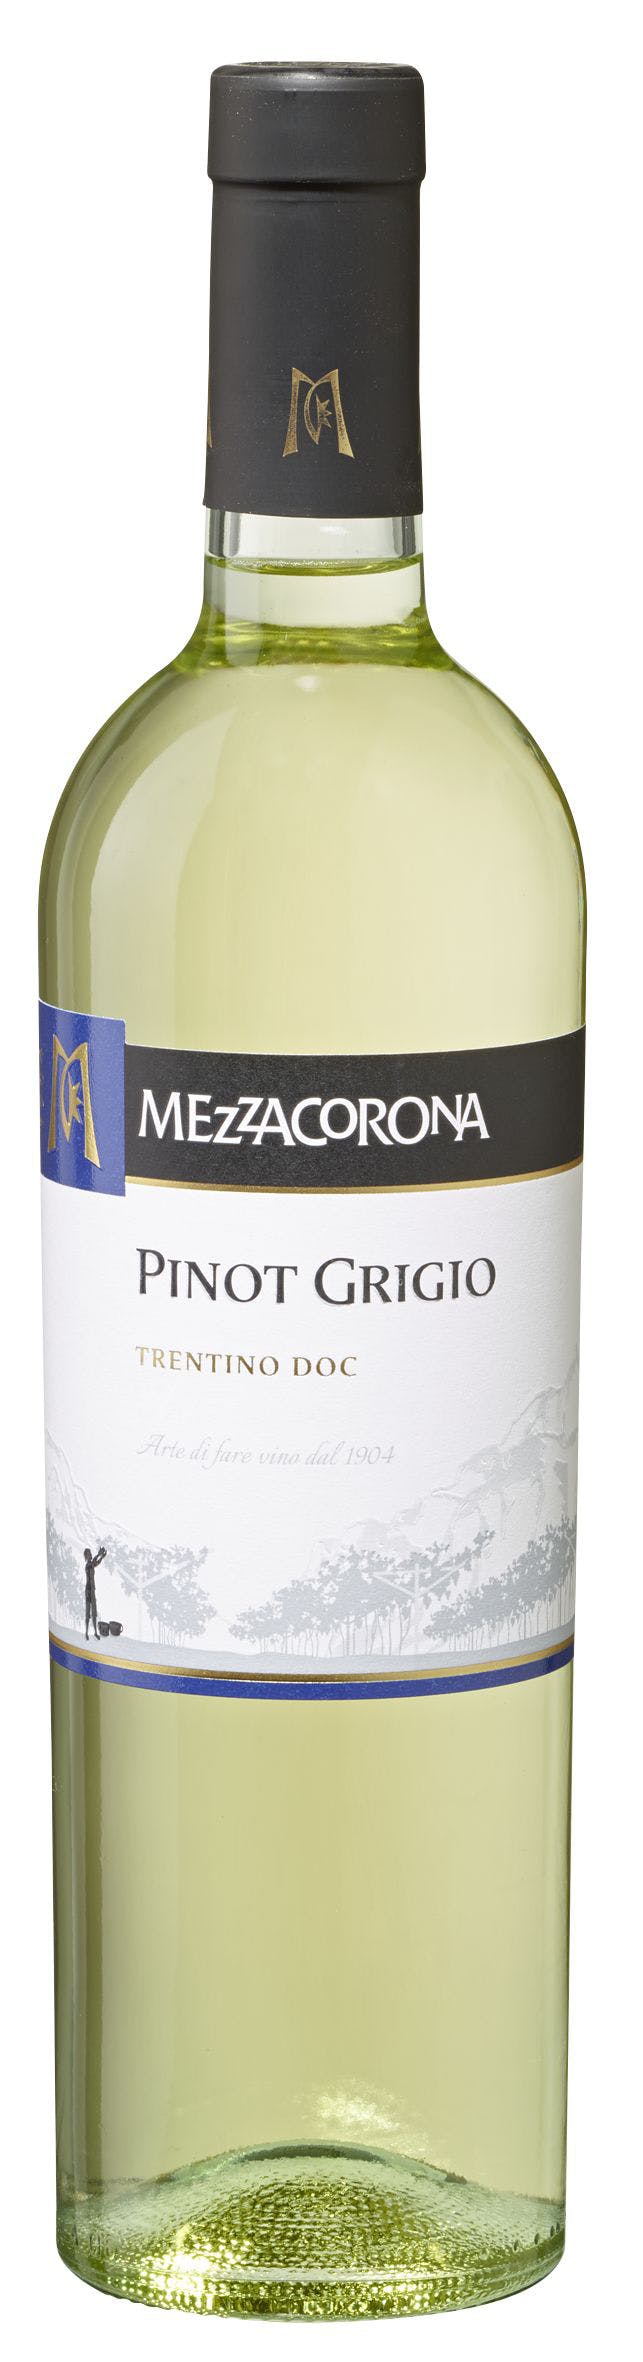 Mezzacorona Pinot Grigio 6 METRO trocken Trentino DOP Weißwein x l Marktplatz 0,75 (4,5 l) Flaschen 